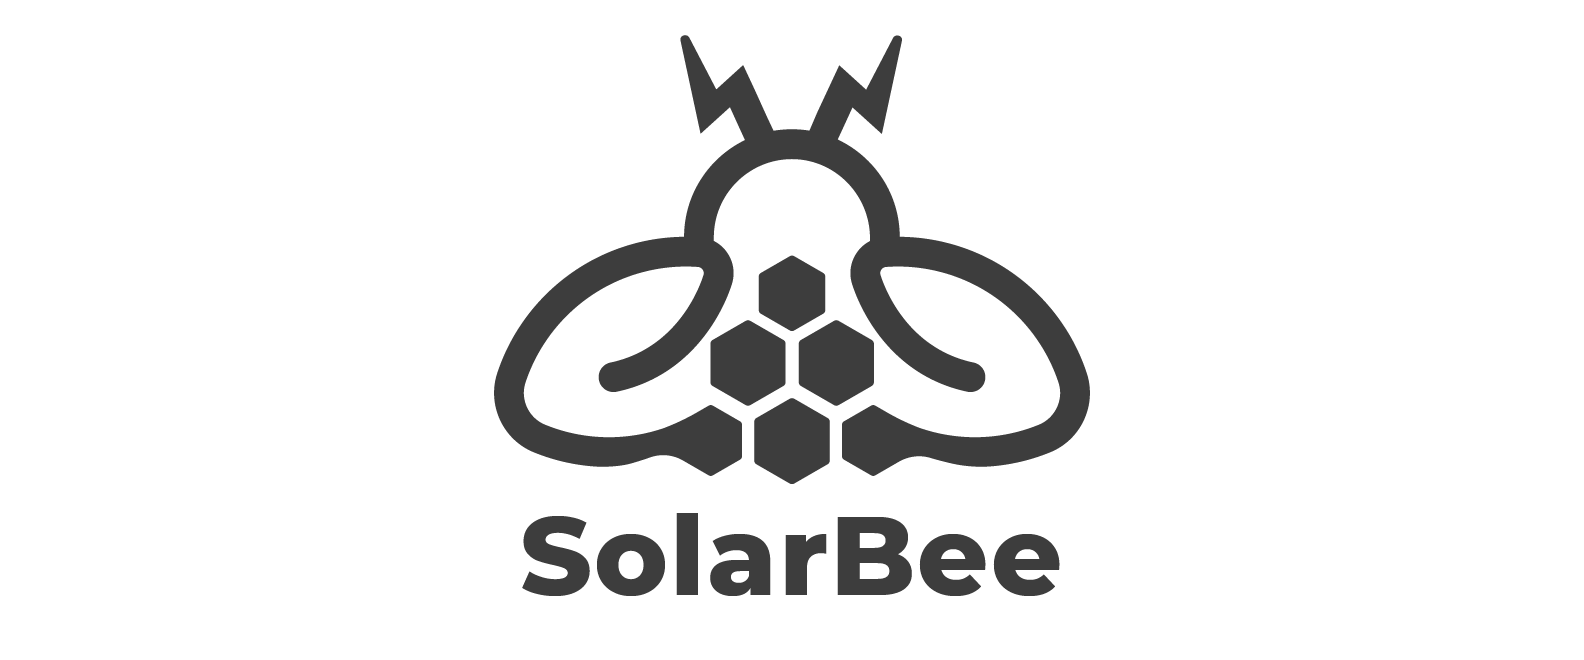 SolarBee-01